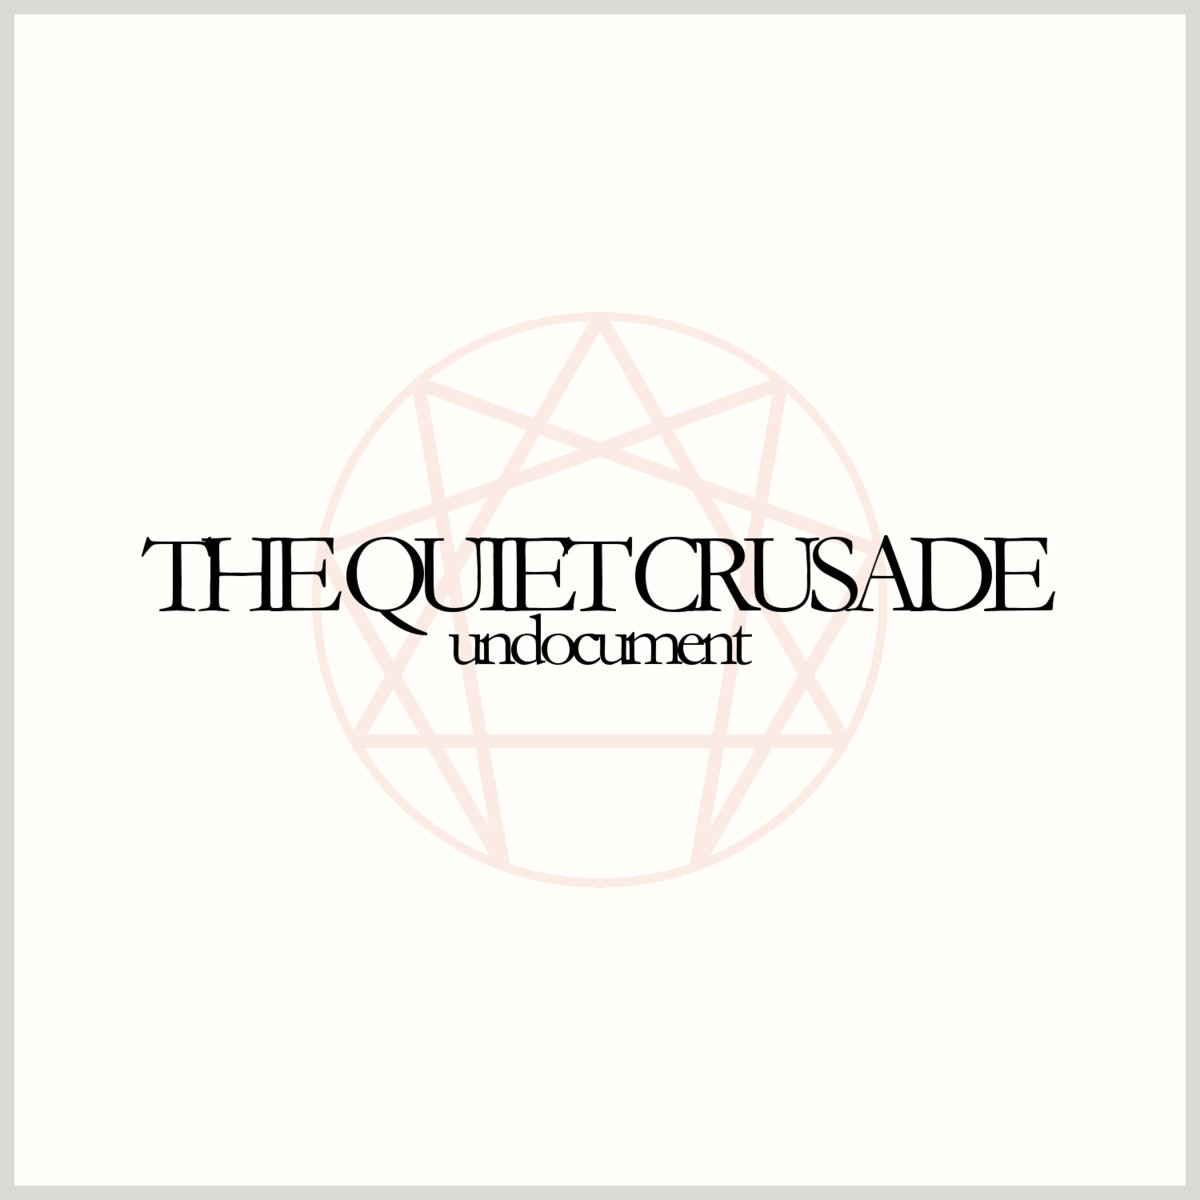  Undocument – The Quiet Crusade